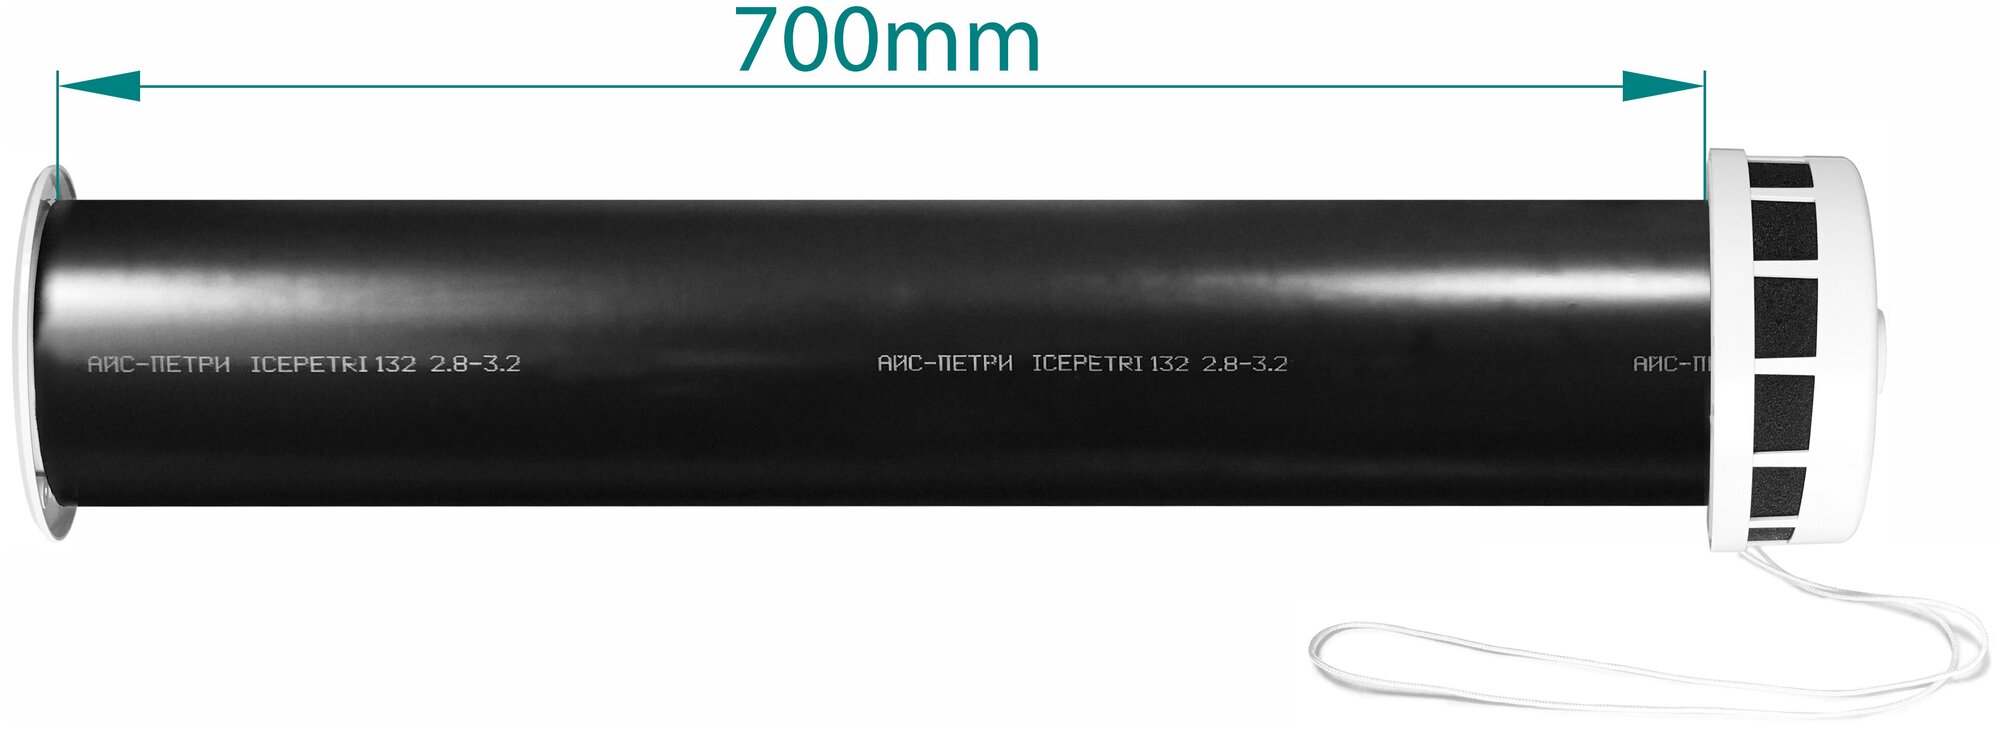 Приточный клапан КИВ-125 icepetri 700мм с к.базальтом и ivory ASA-пластиковой решеткой - фотография № 2